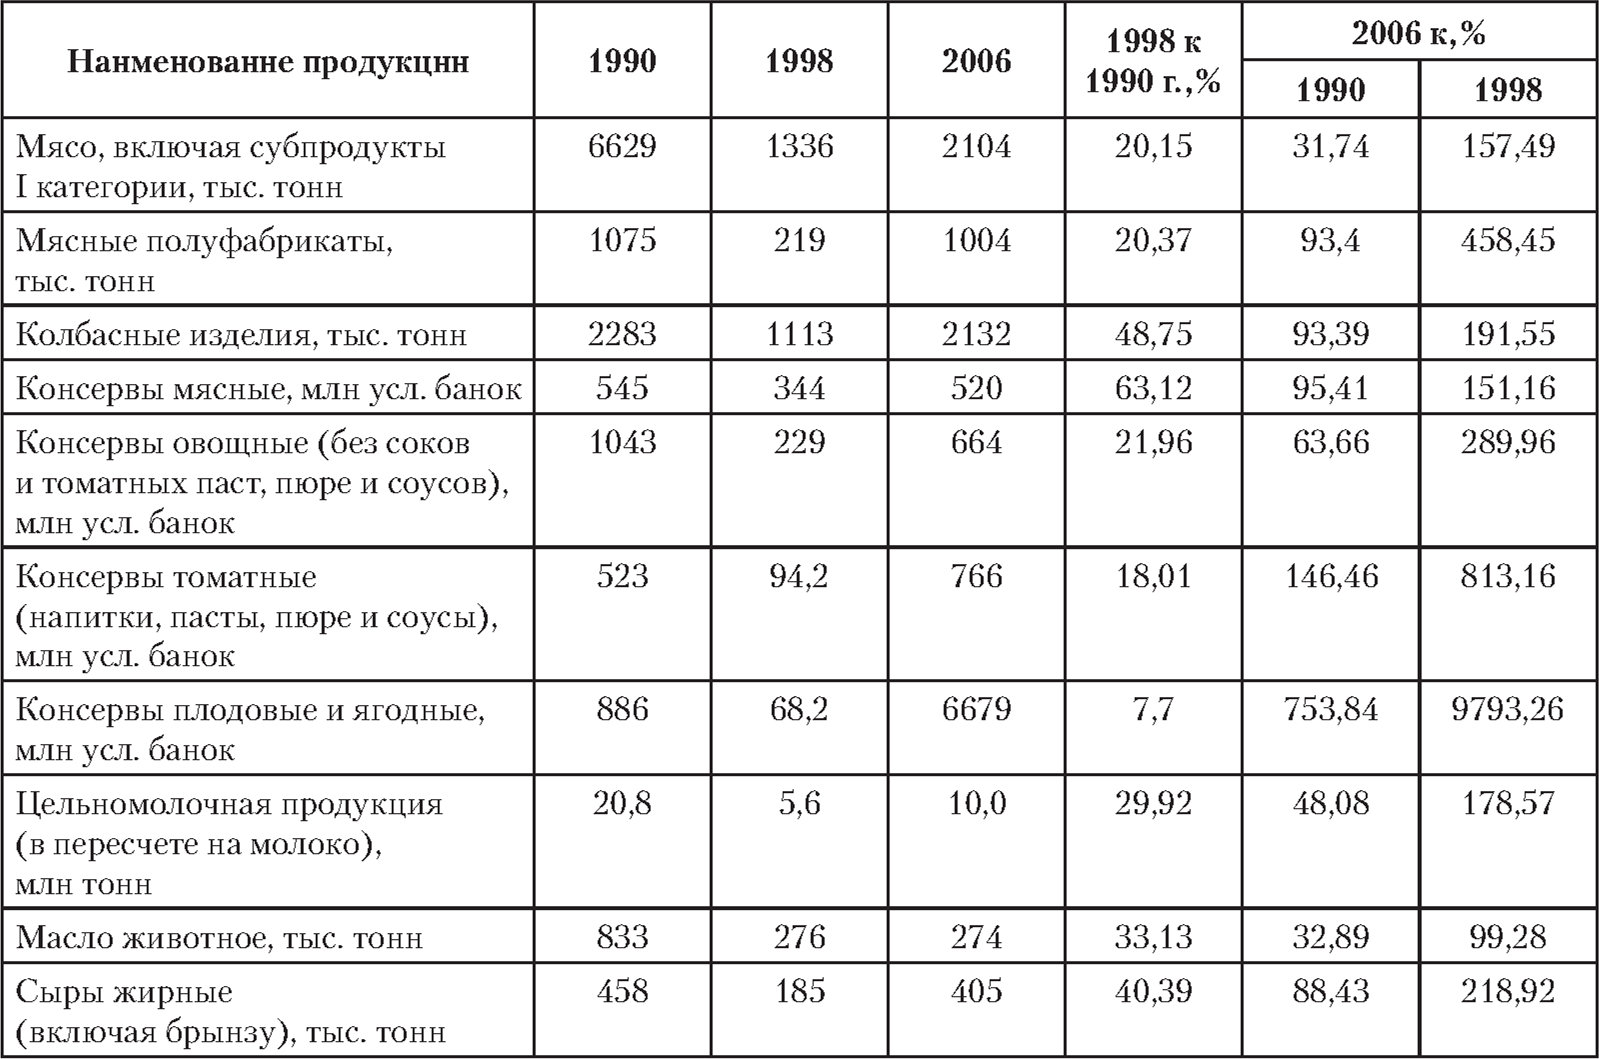 Производство основных видов продукции пищевой промышленности за период 1990-2006 гг.